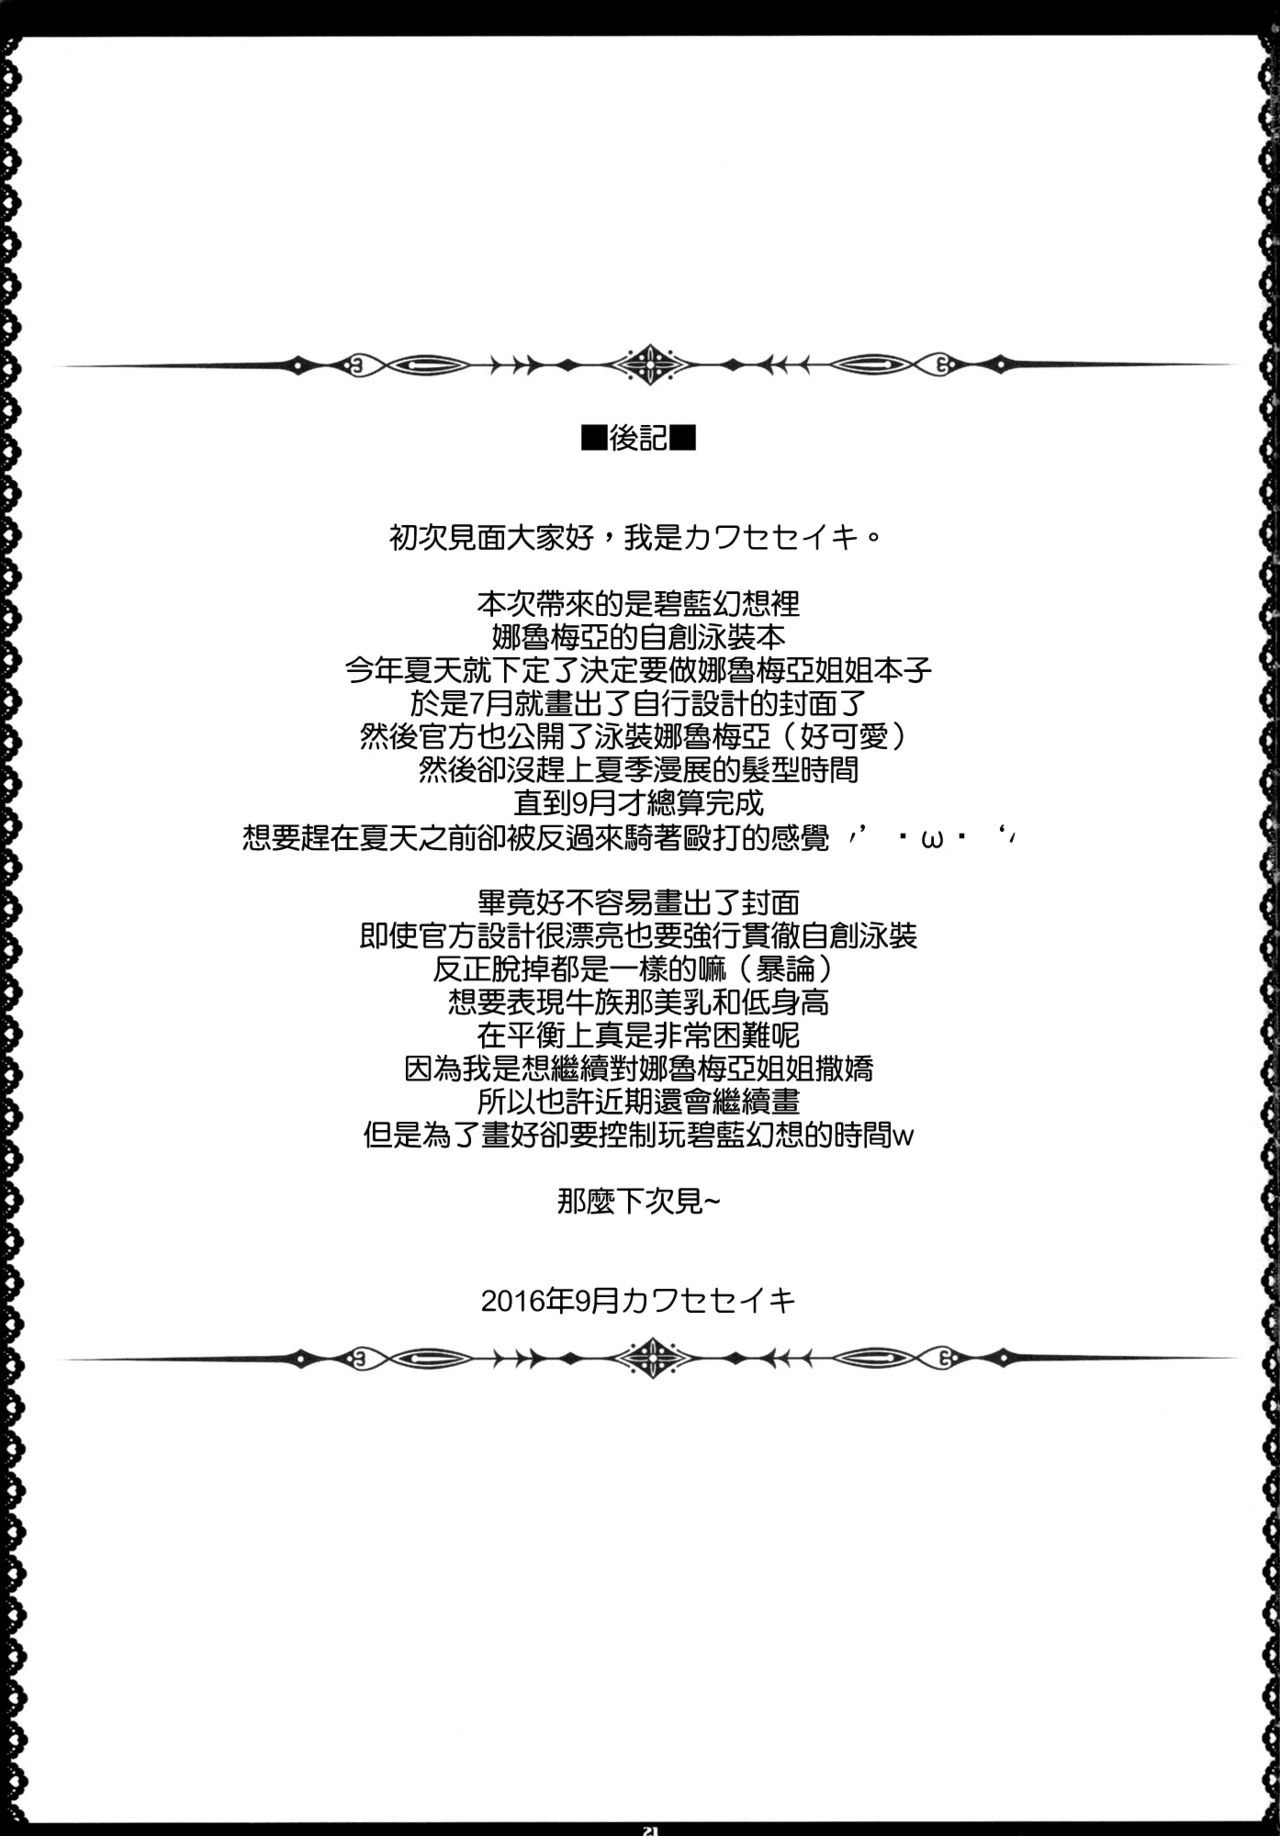 (C90) [Primal Gym (カワセセイキ)] Sleepless summer (グランブルーファンタジー) [中国翻訳]